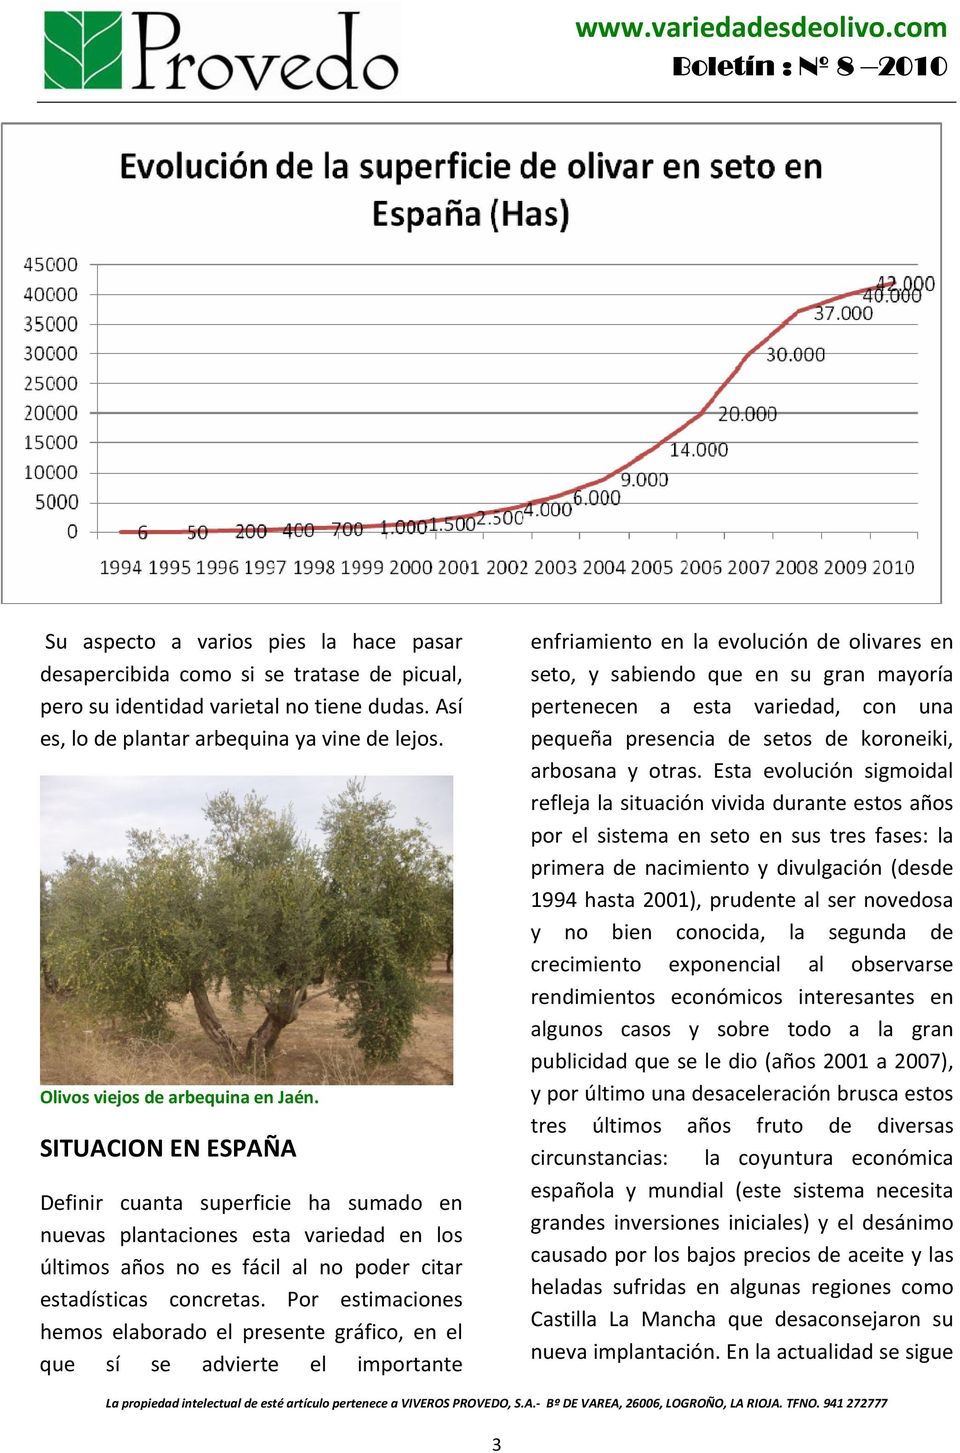 SITUACION EN ESPAÑA Definir cuanta superficie ha sumado en nuevas plantaciones esta variedad en los últimos años no es fácil al no poder citar estadísticas concretas.